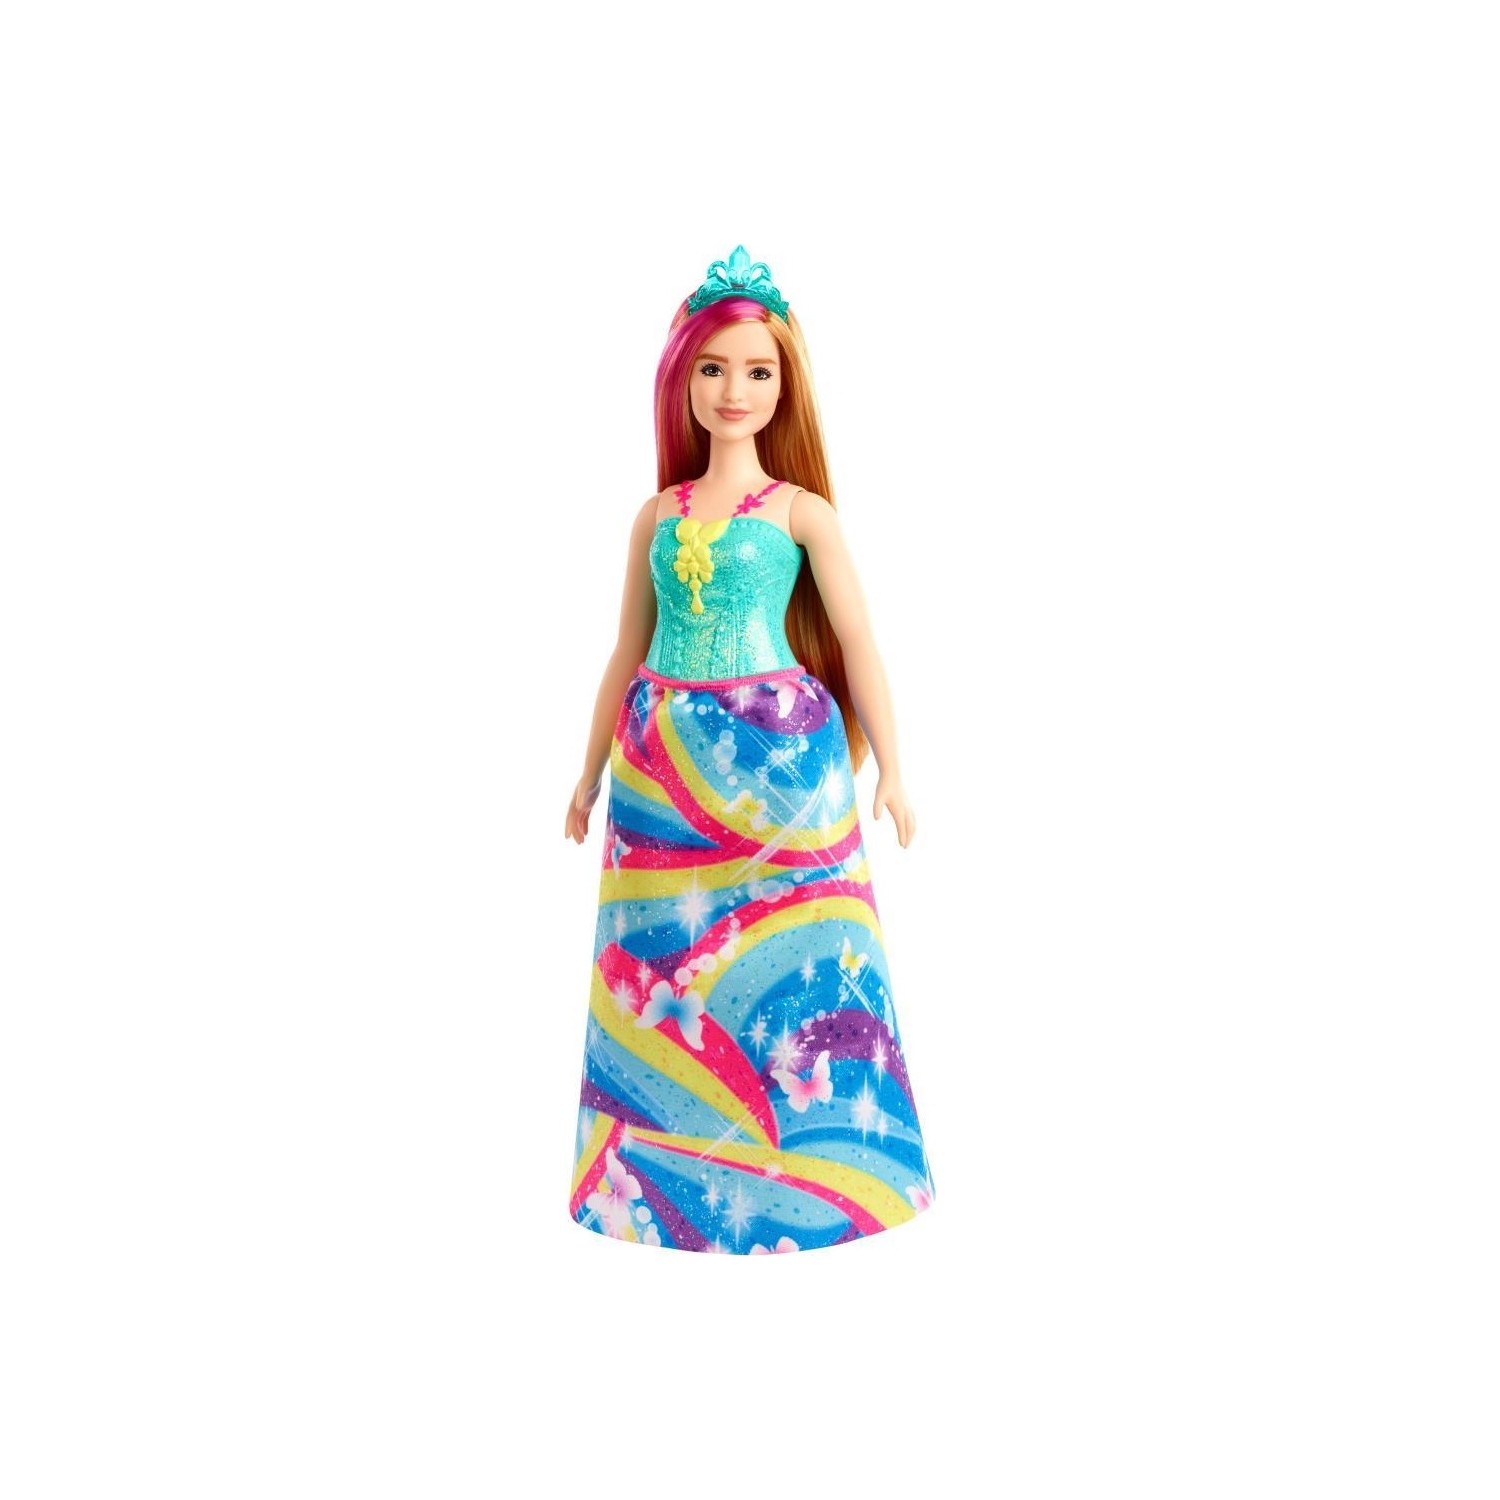 Кукла Barbie Dreamtopia Princess Dolls GJK16 кукла barbie dreamtopia princess fjc95